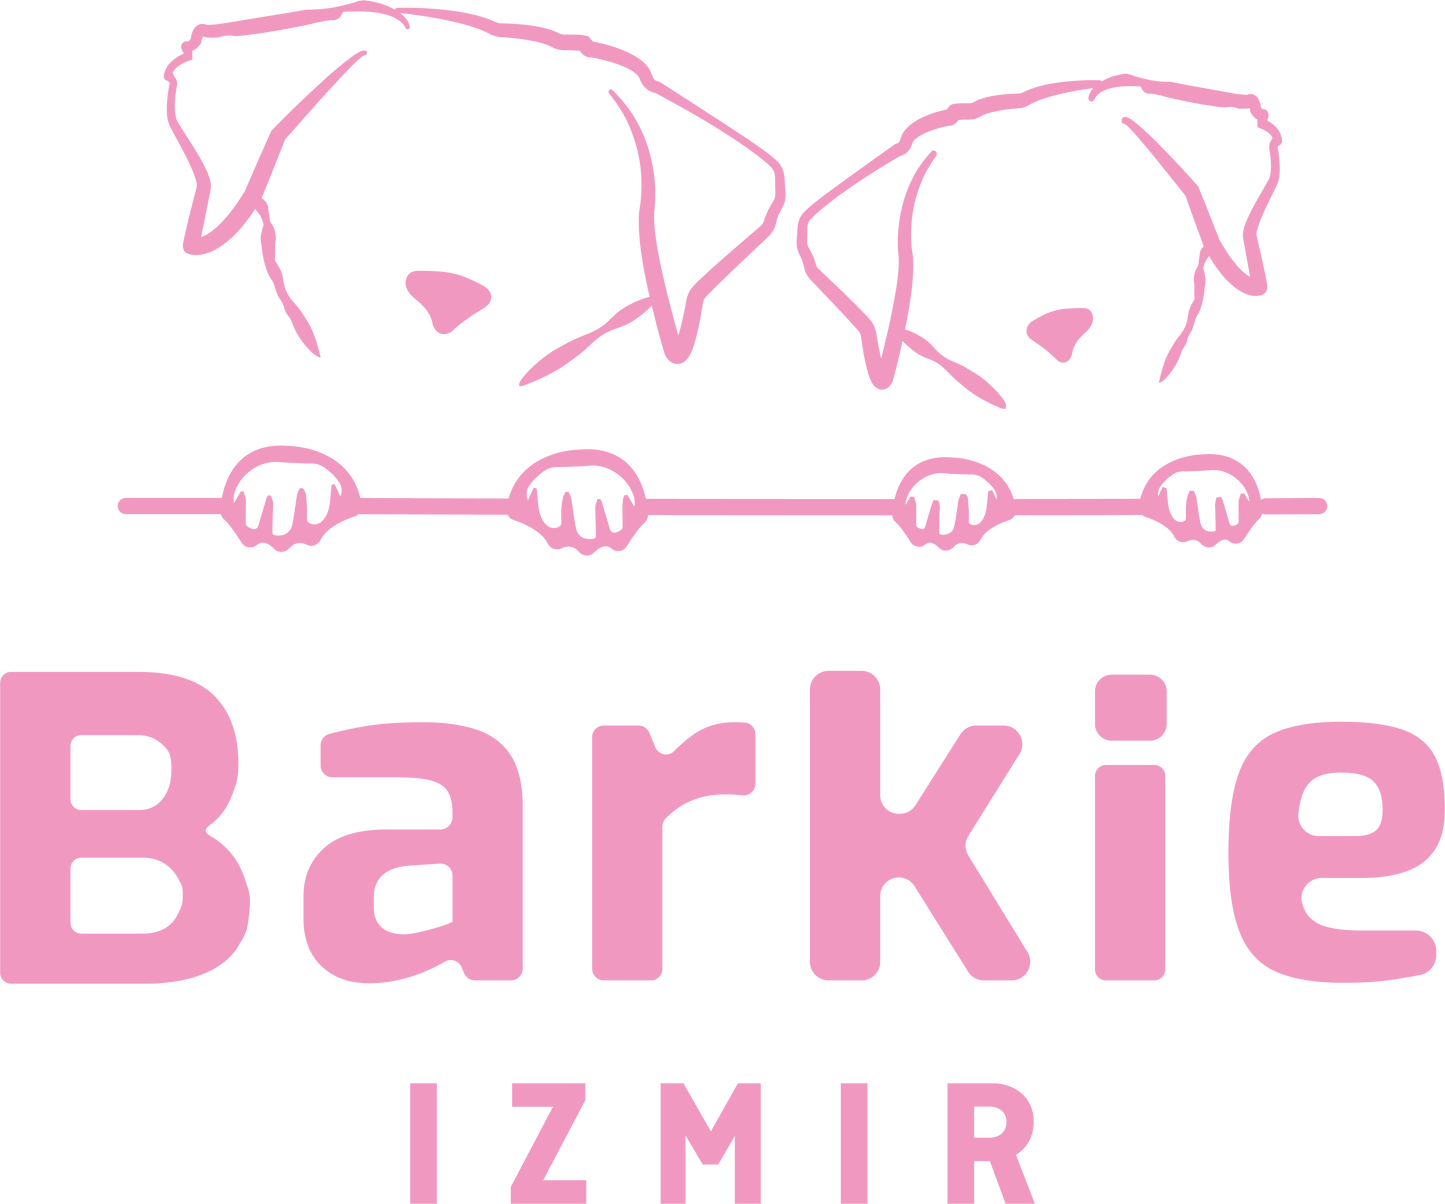 Barkie İzmir Hediye Kartı